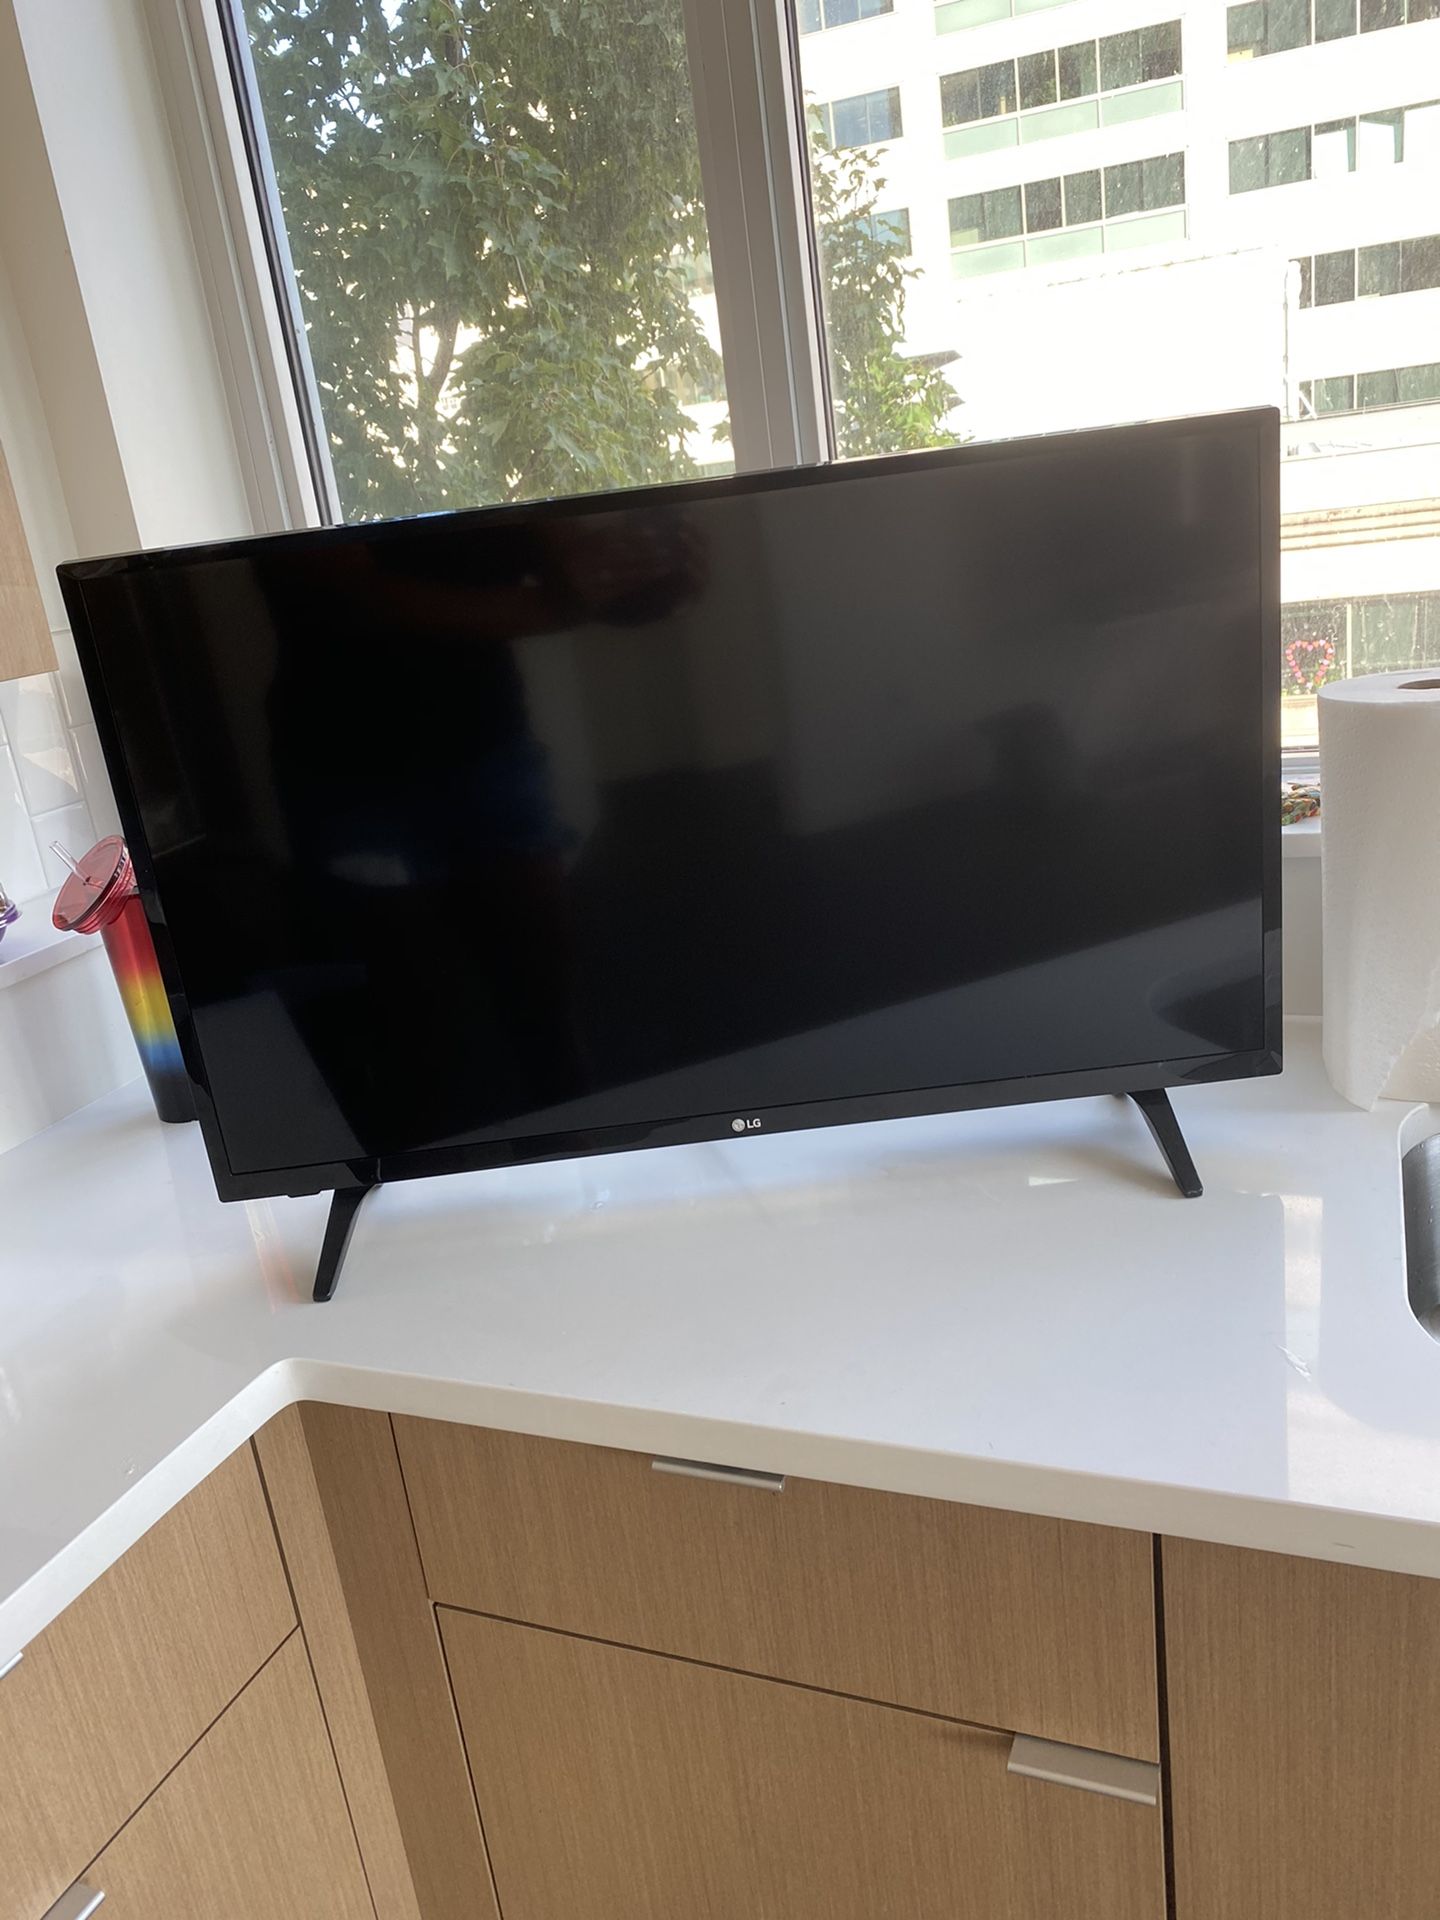 32’ inch LG TV